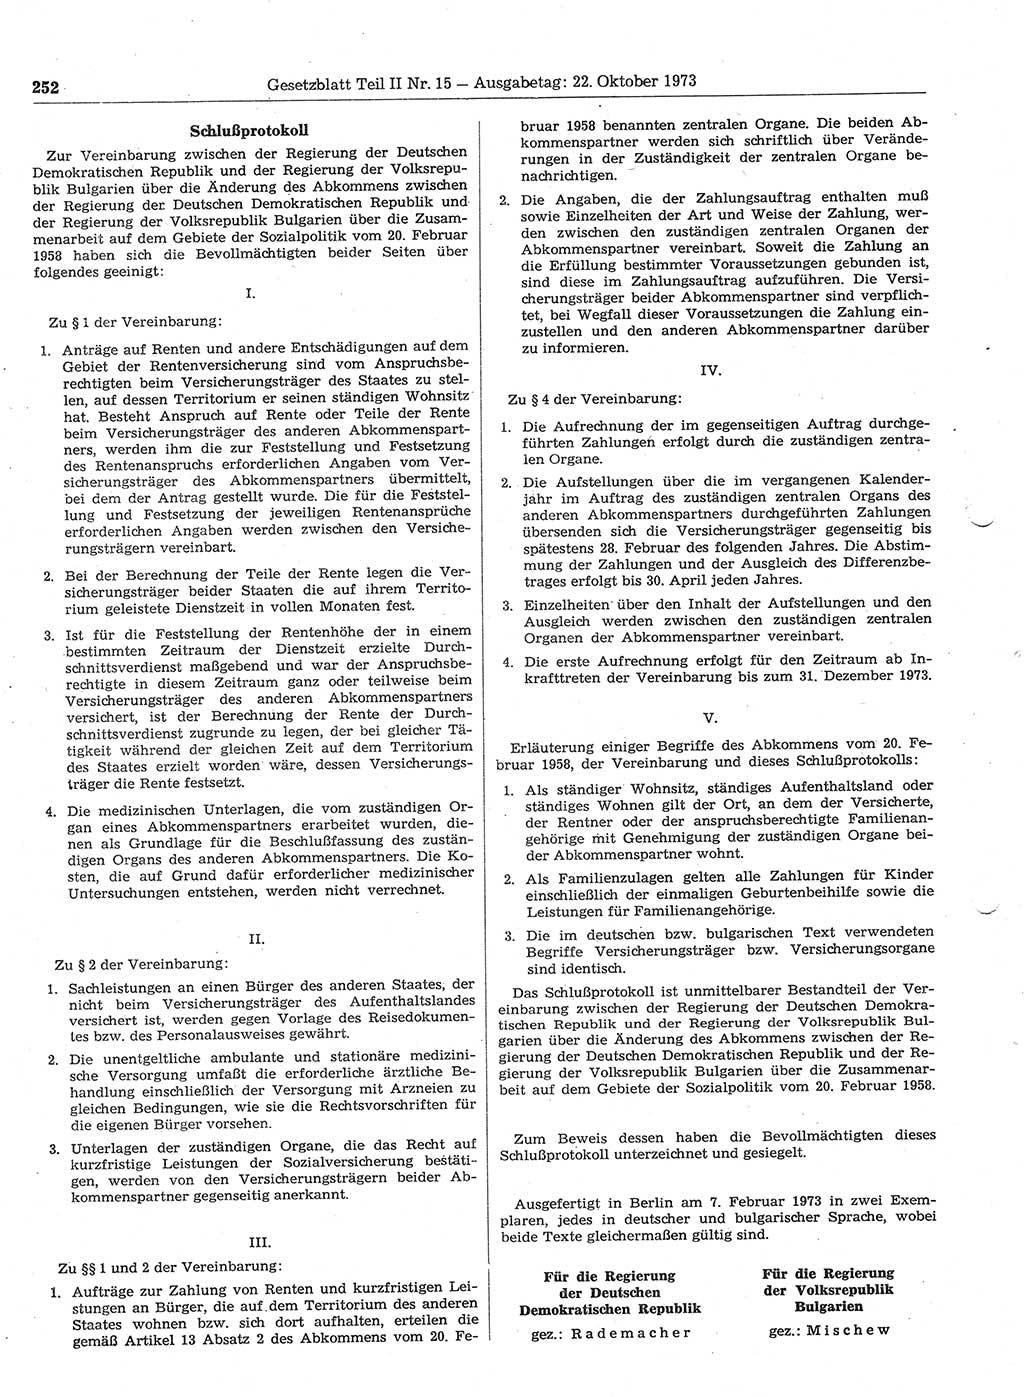 Gesetzblatt (GBl.) der Deutschen Demokratischen Republik (DDR) Teil ⅠⅠ 1973, Seite 252 (GBl. DDR ⅠⅠ 1973, S. 252)